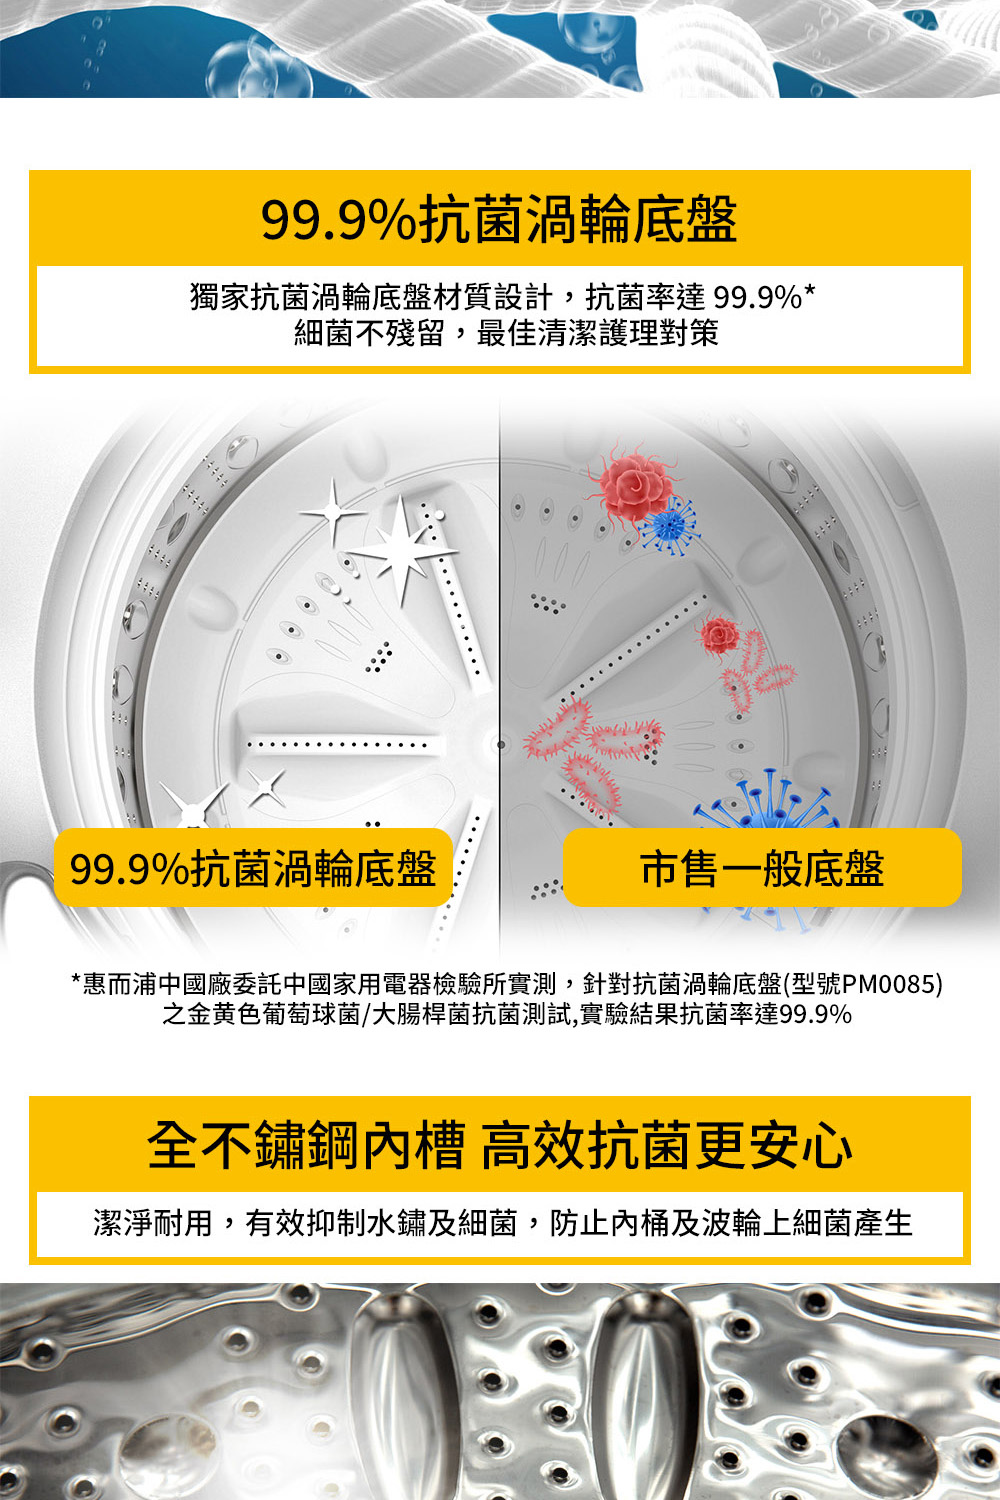 惠而浦中國廠委託中國家用電器檢驗所實測,針對抗菌渦輪底盤型號PM0085